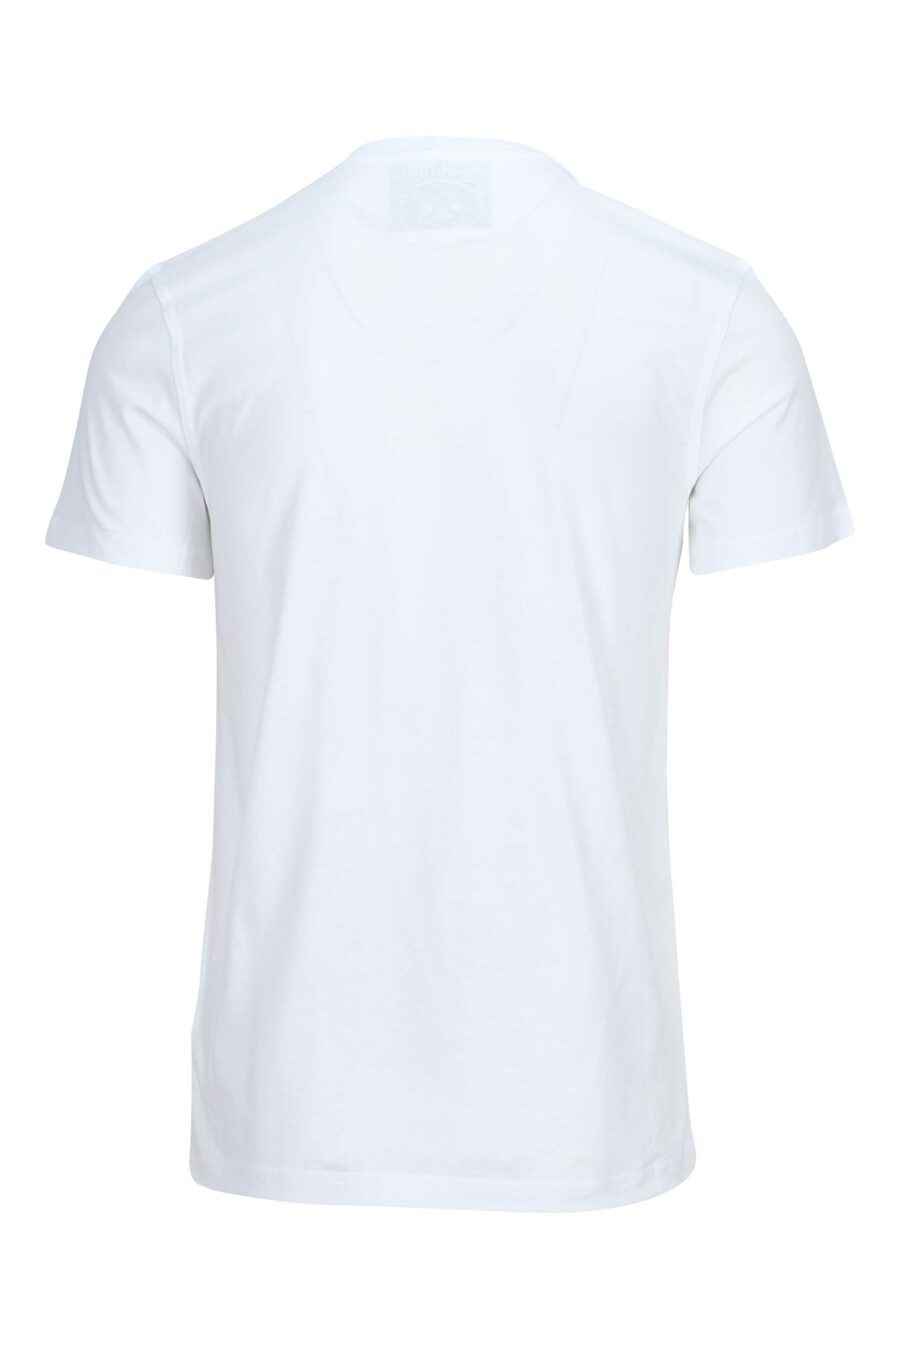 T-shirt blanc en coton biologique avec maxilogo "teddy" - 889316854503 1